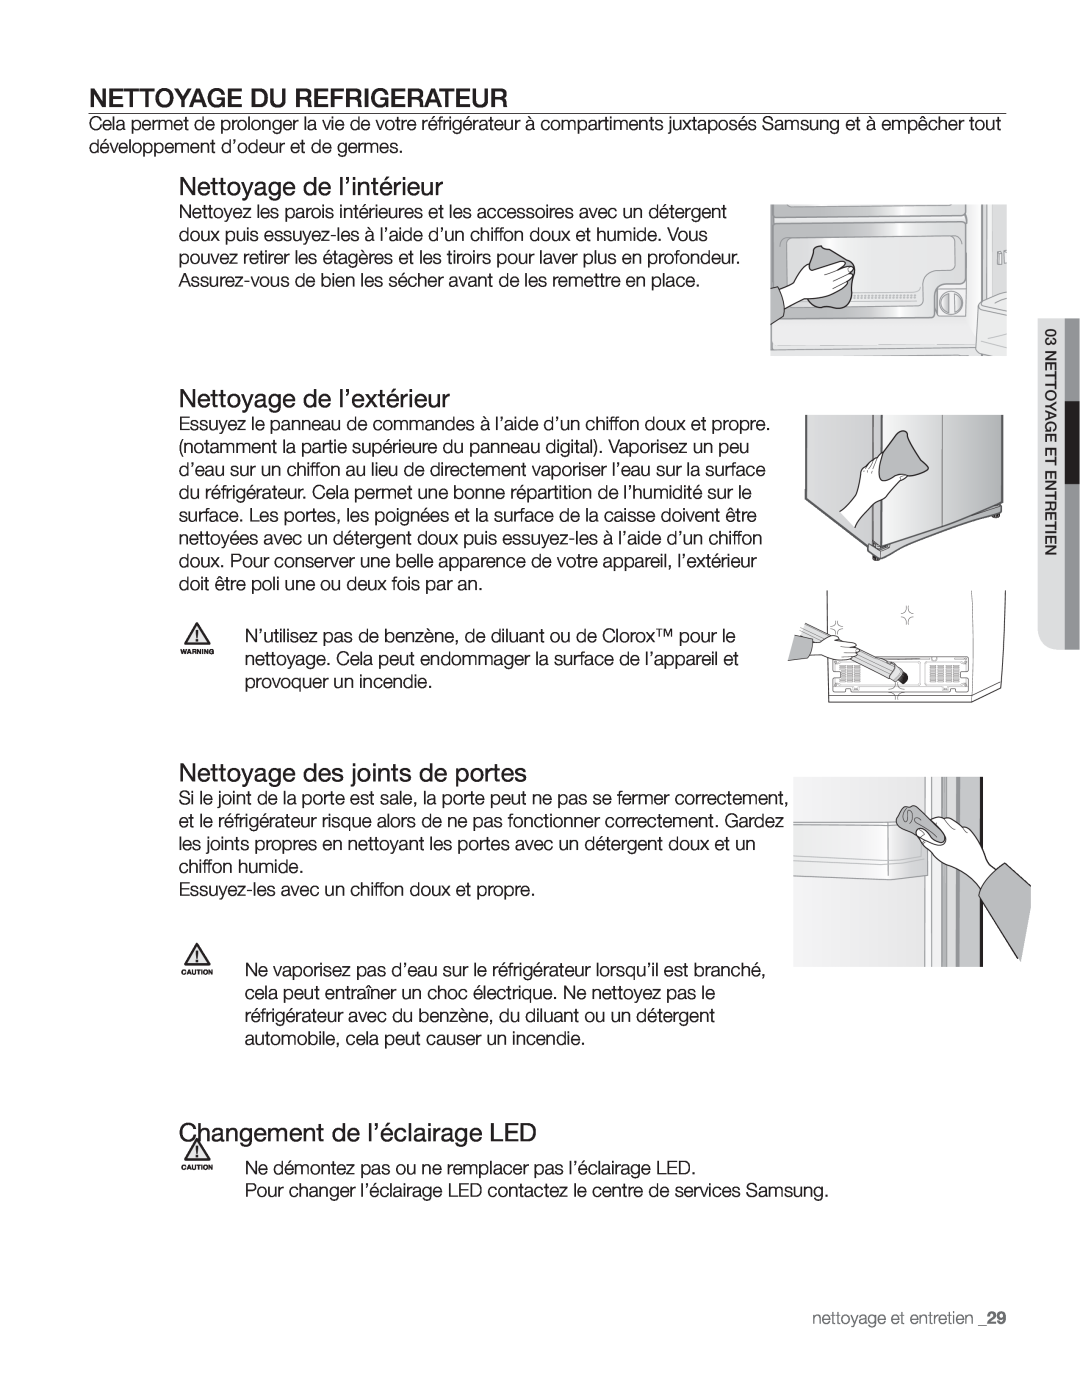 Samsung DA68-01890Q user manual Nettoyage Du Refrigerateur, Nettoyage de l’intérieur, Nettoyage de l’extérieur 